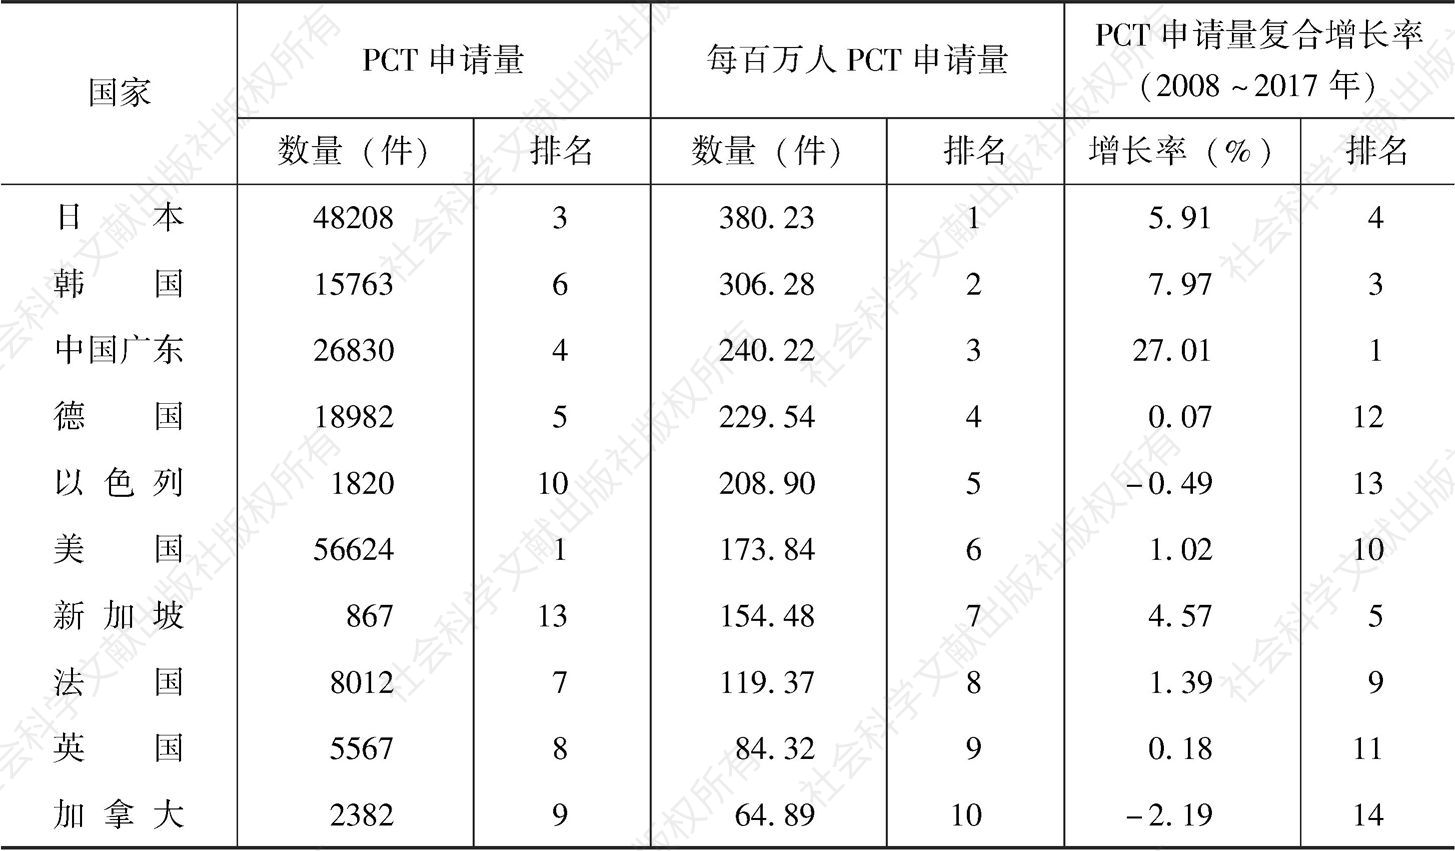 表2-5 PCT专利申请量国际比较（2017年）